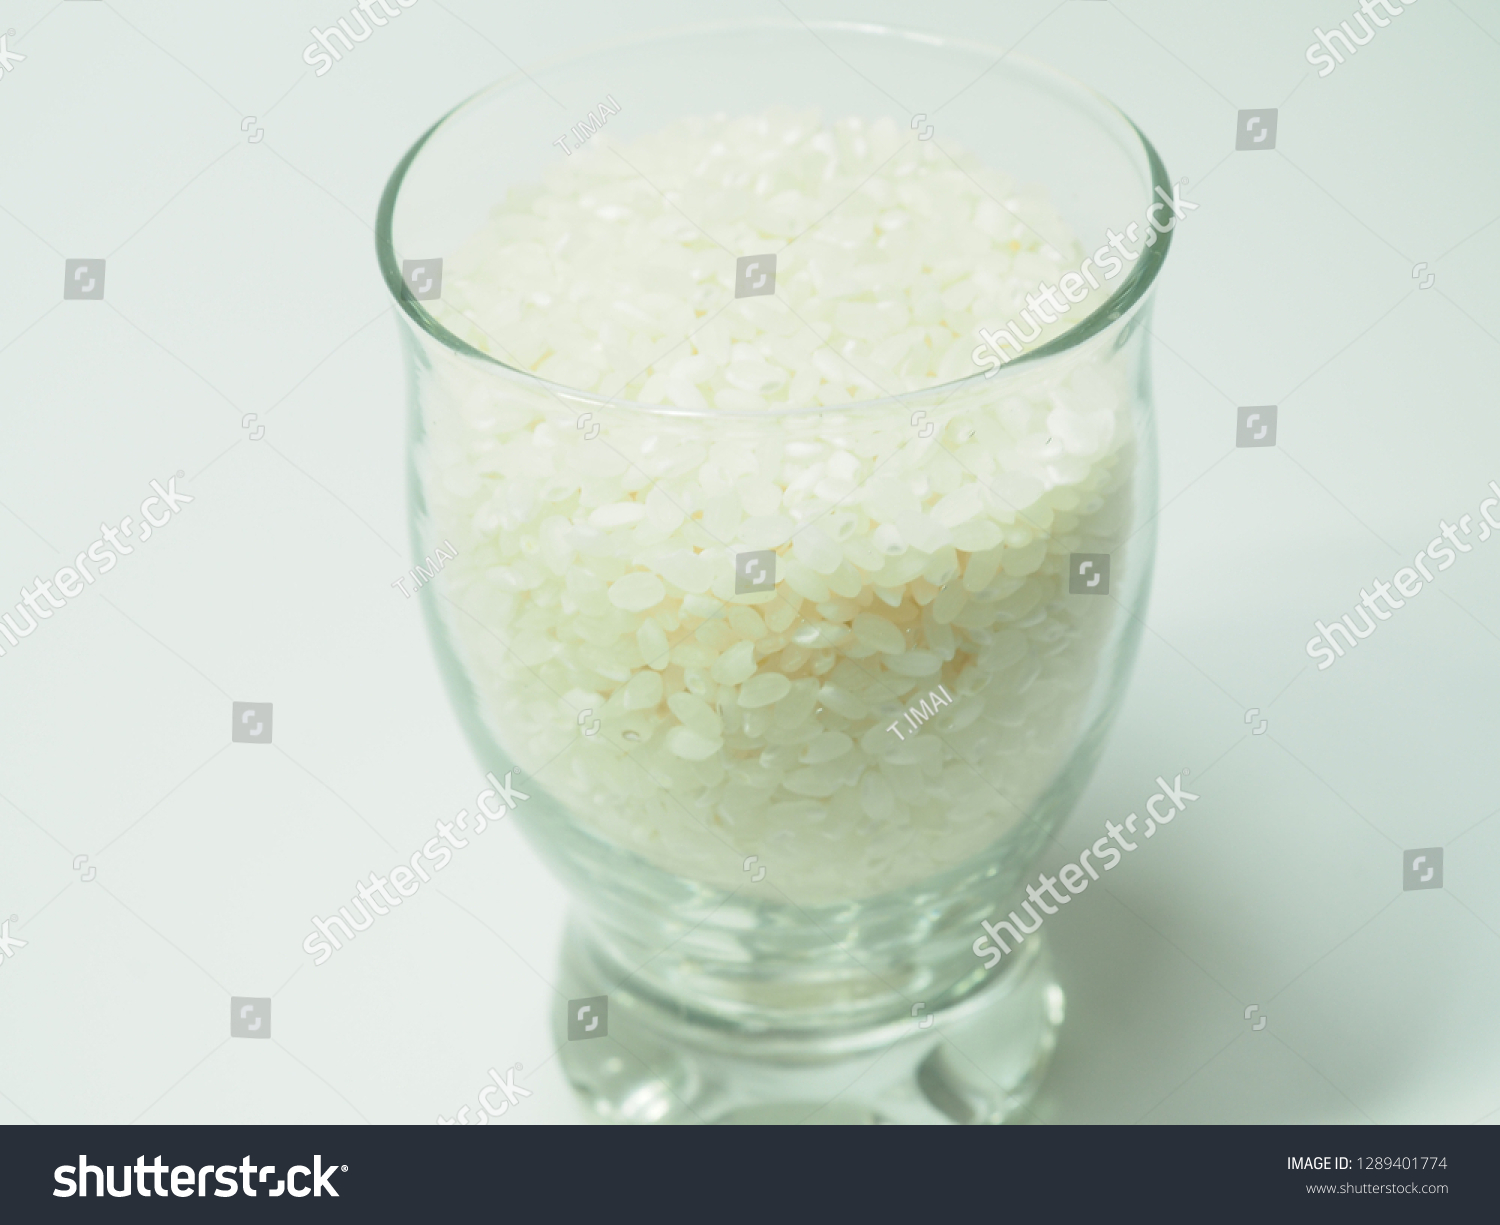 Japan's boasting rice, polished Koshihikari #1289401774